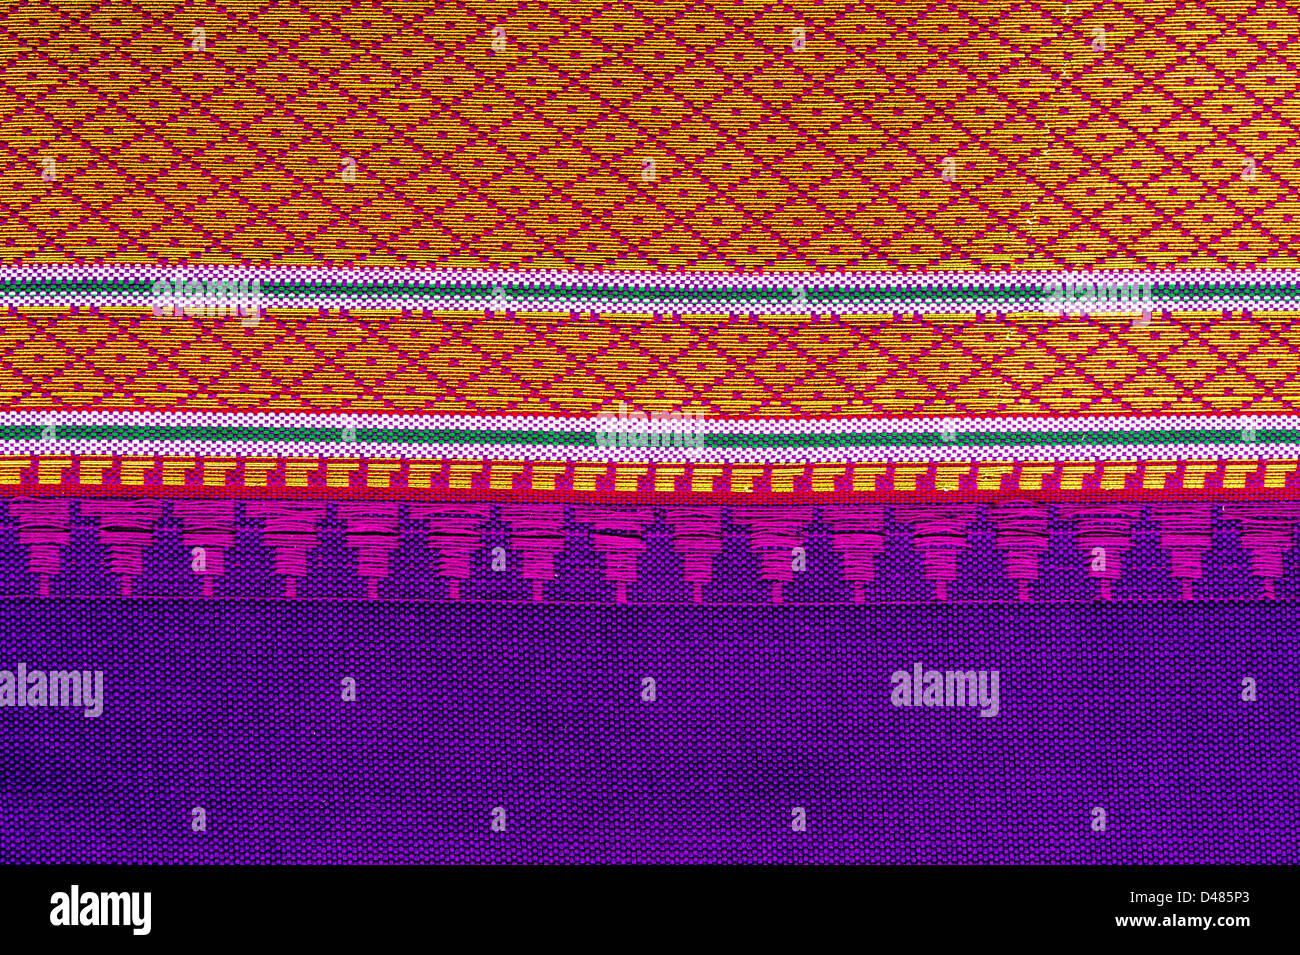 La soie indienne sari coloré montrant border pattern. Close up. L'Andhra Pradesh, Inde Banque D'Images